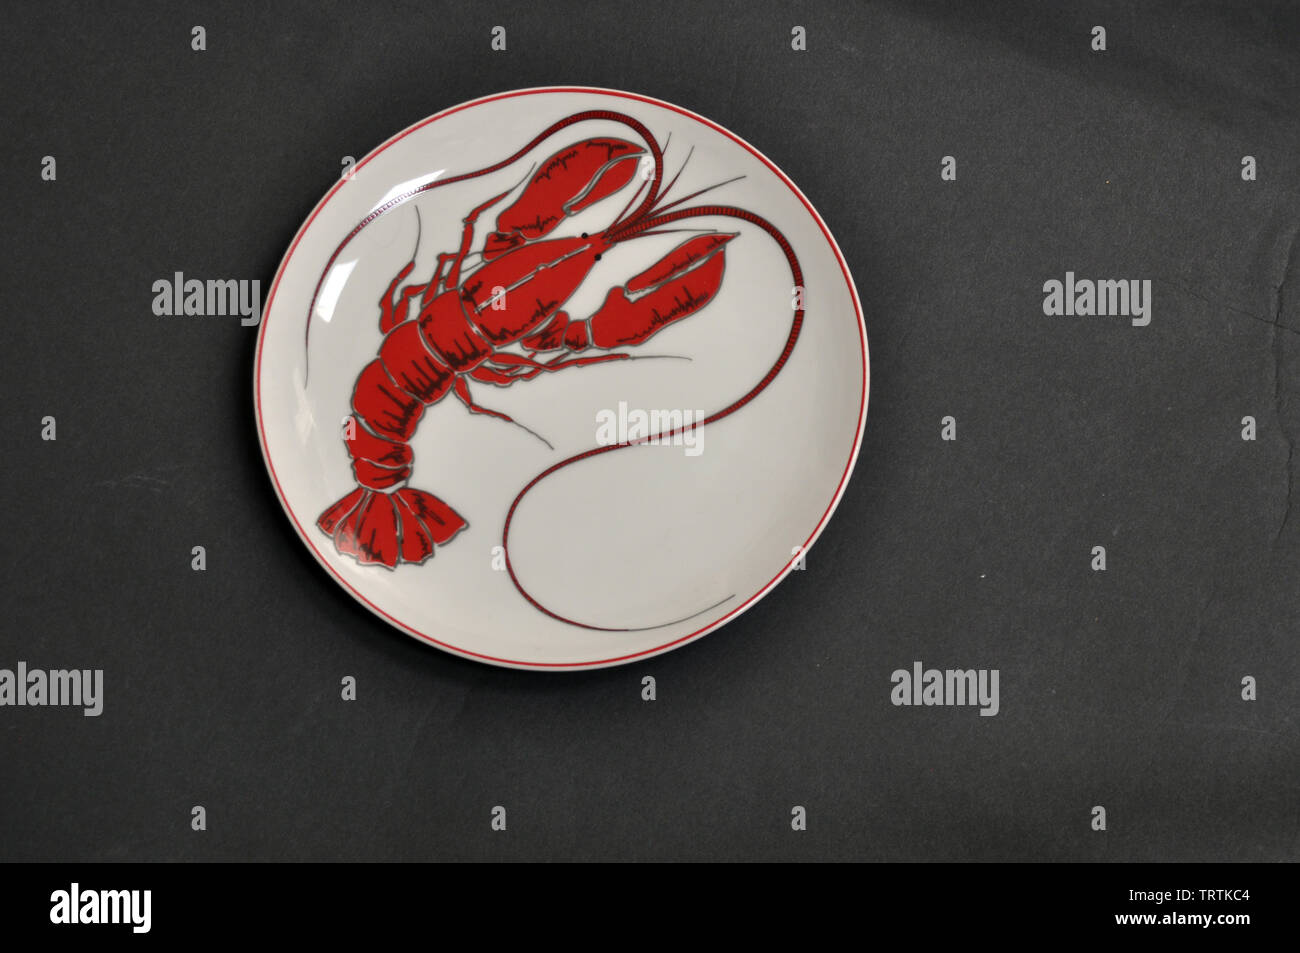 Plato de cena blanca redonda, con una imagen de langosta y ribetes rojos Foto de stock